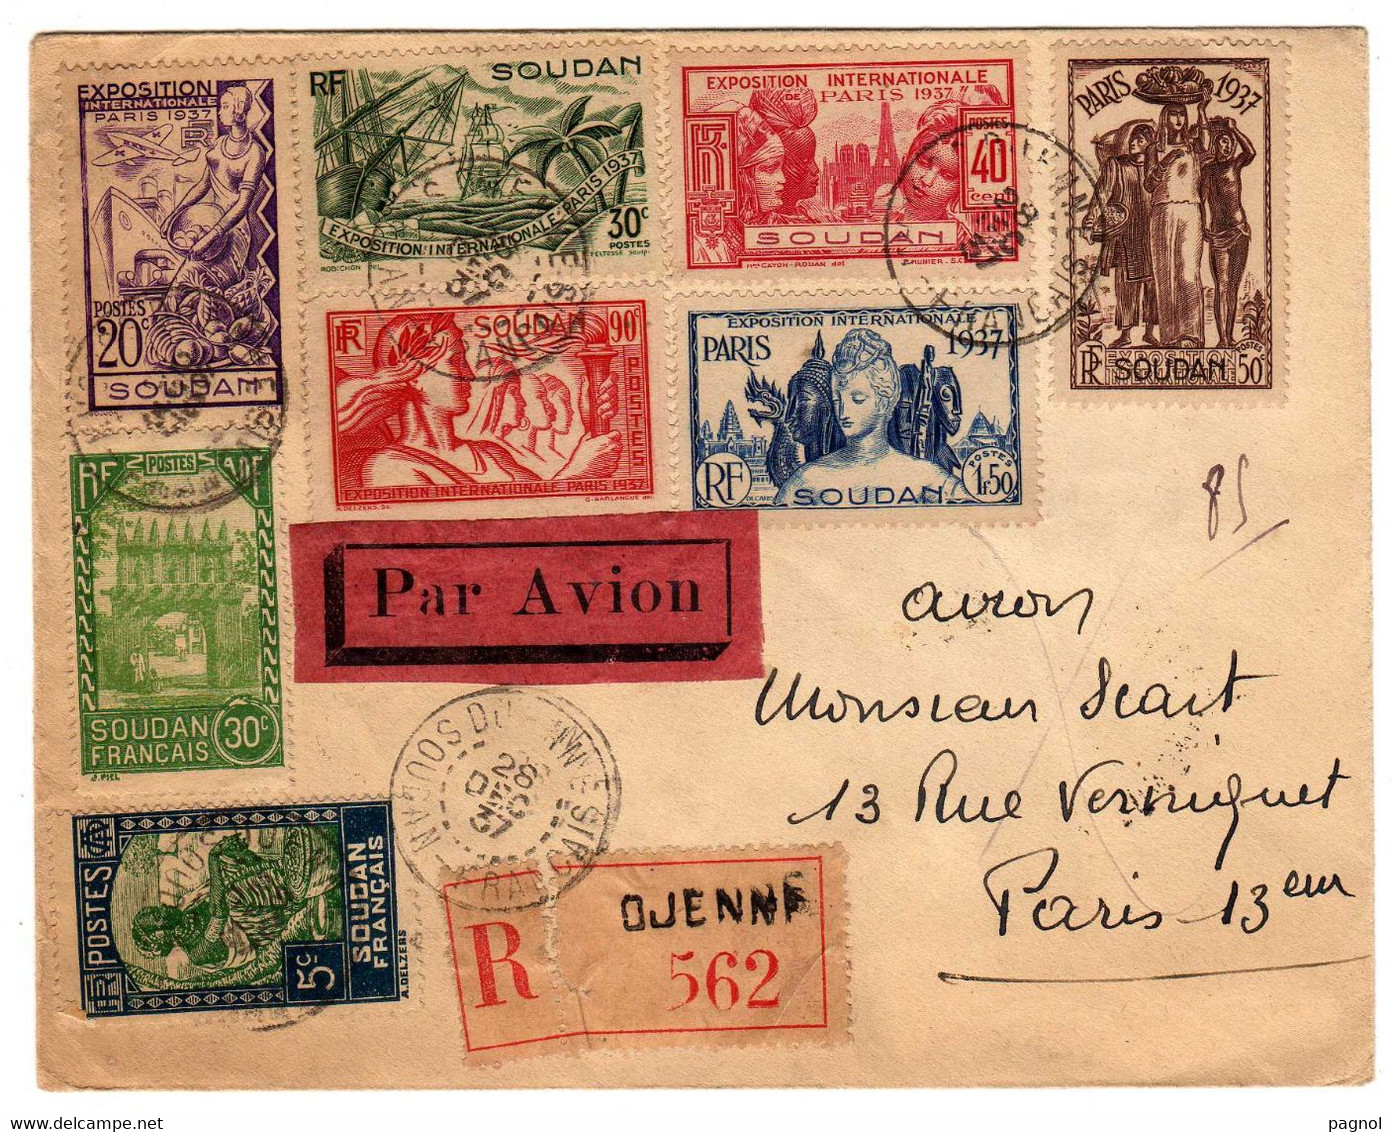 Soudan : Exposition Internationale Paris 1937 : Lettre Rec. Par Avion - Cartas & Documentos